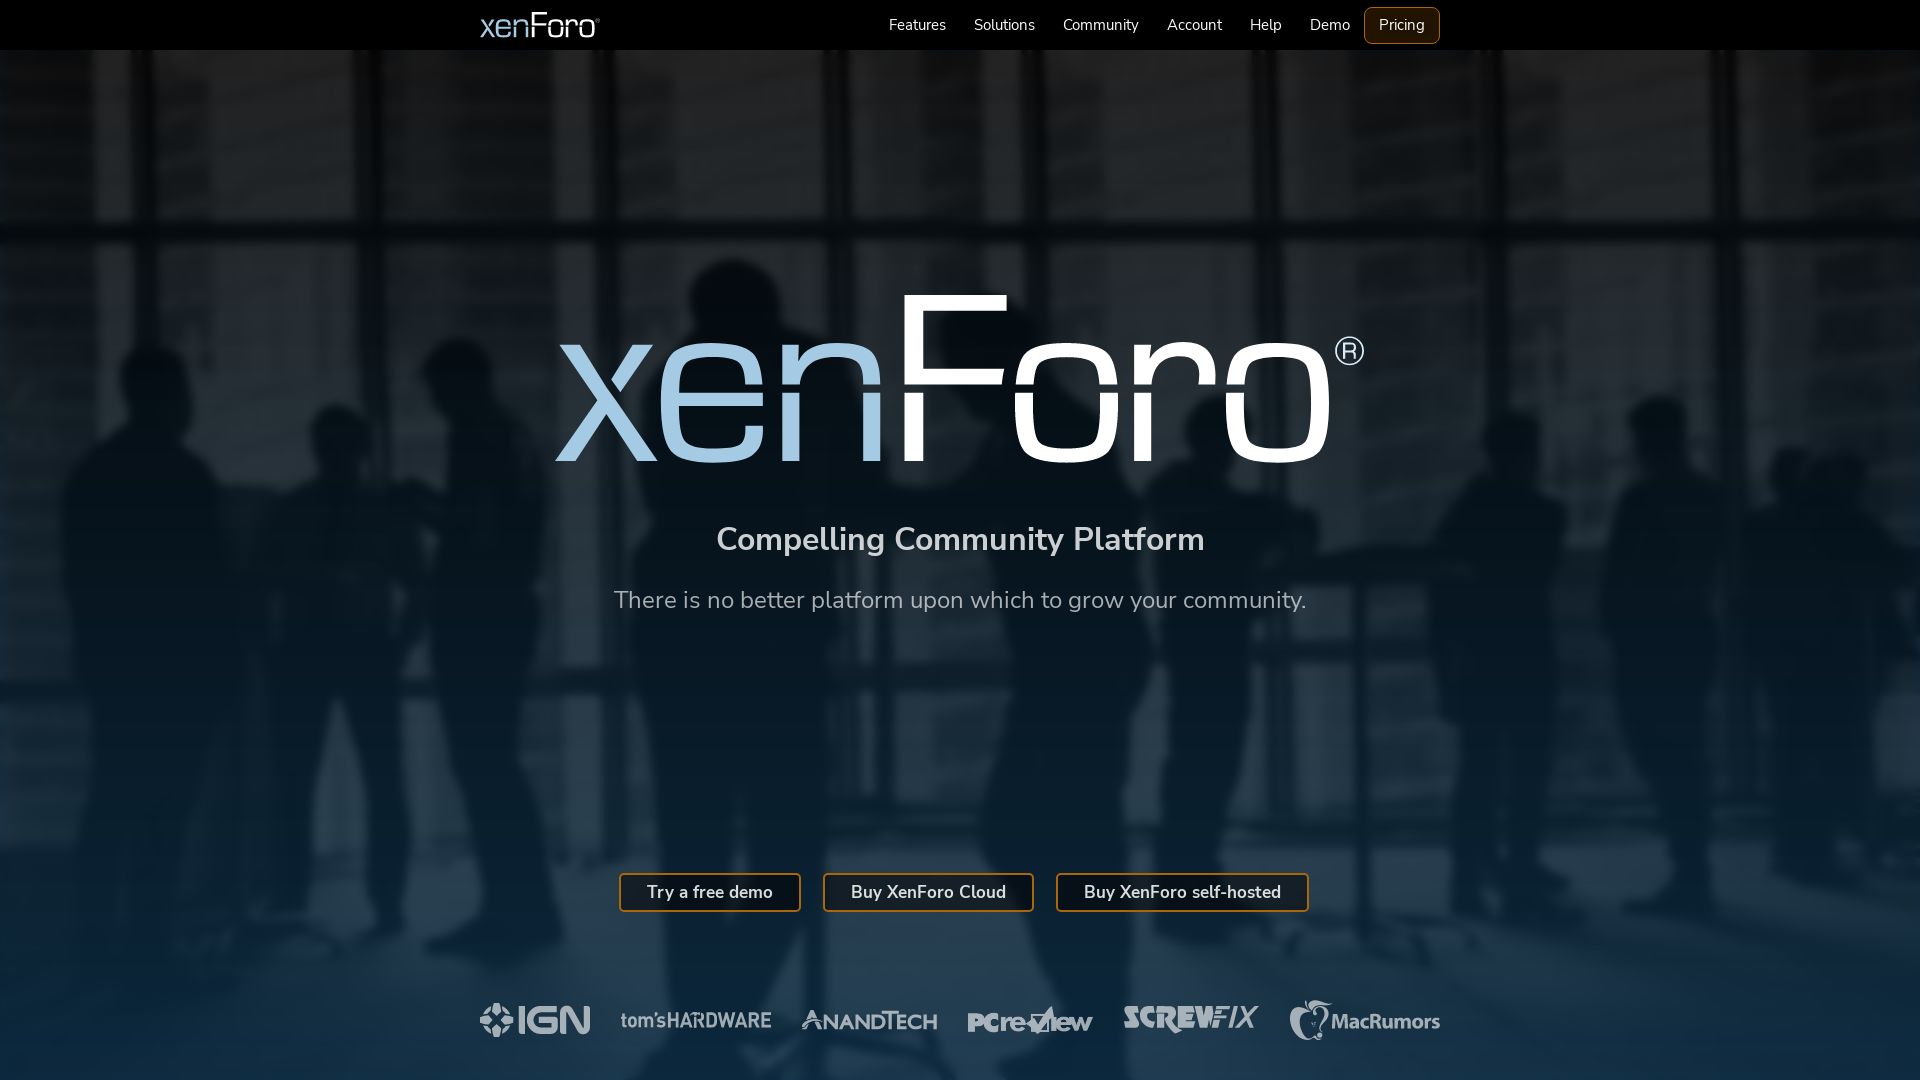 Website status xenforo.com is   ONLINE